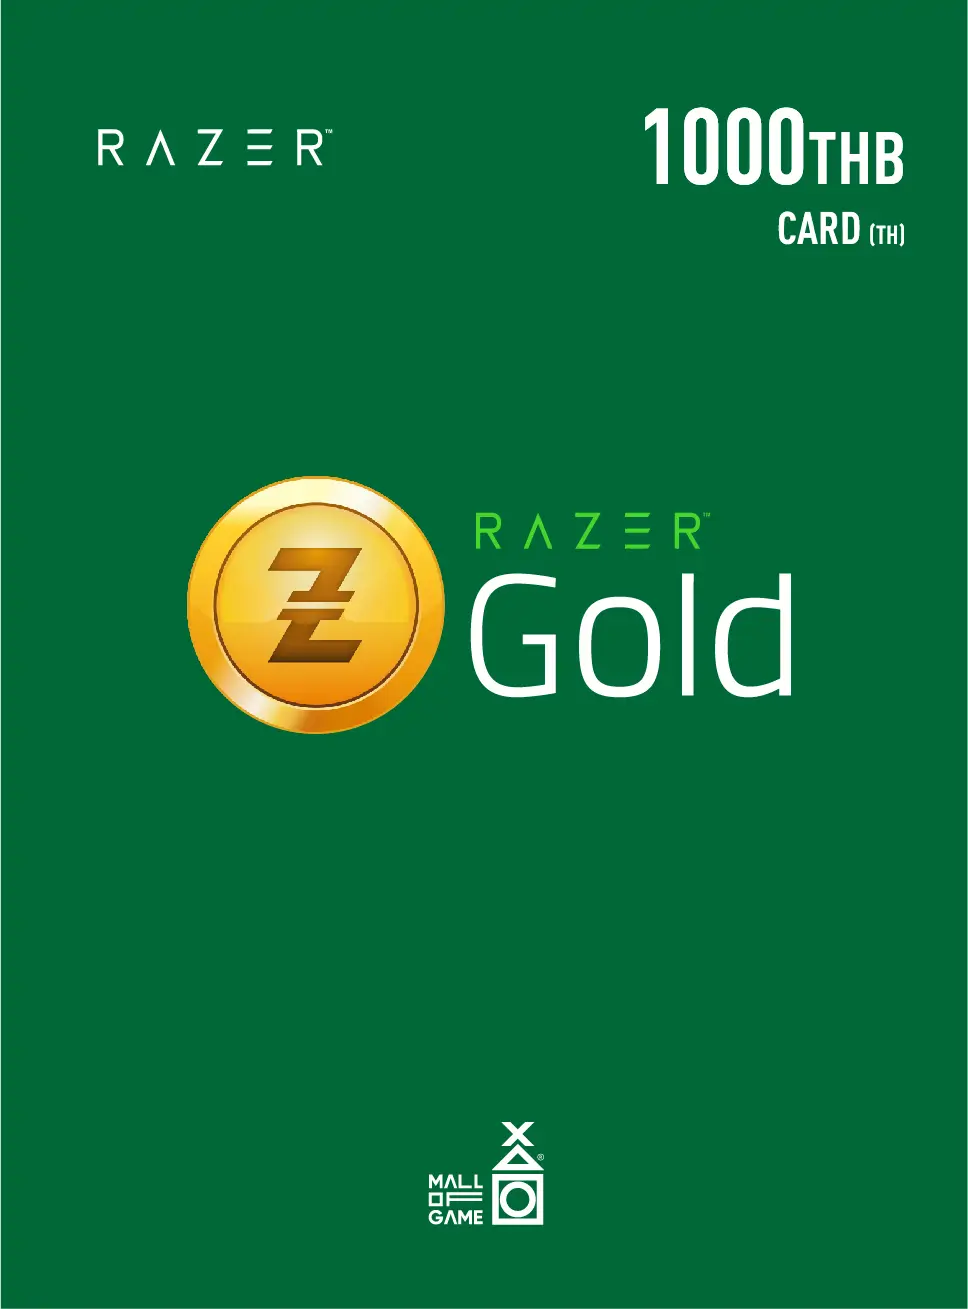 Razer Gold THB1000 (TH)